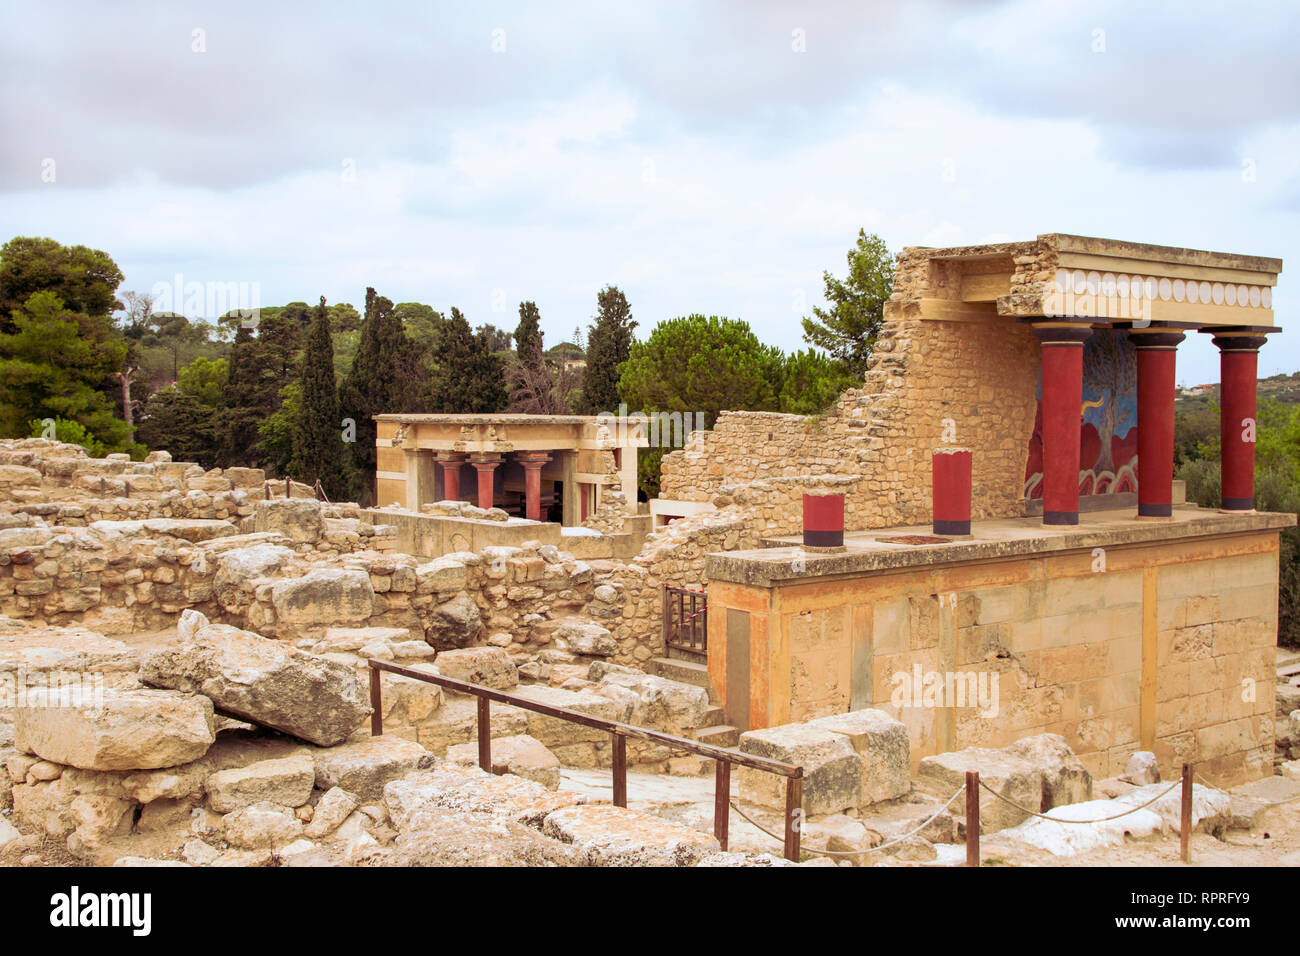 Vista sobre las columnas rojas y las ruinas del Palacio de Knossos Minoica. Plano amplio. Ningún pueblo. Heraklion, Isla de Creta, Grecia. Foto de stock